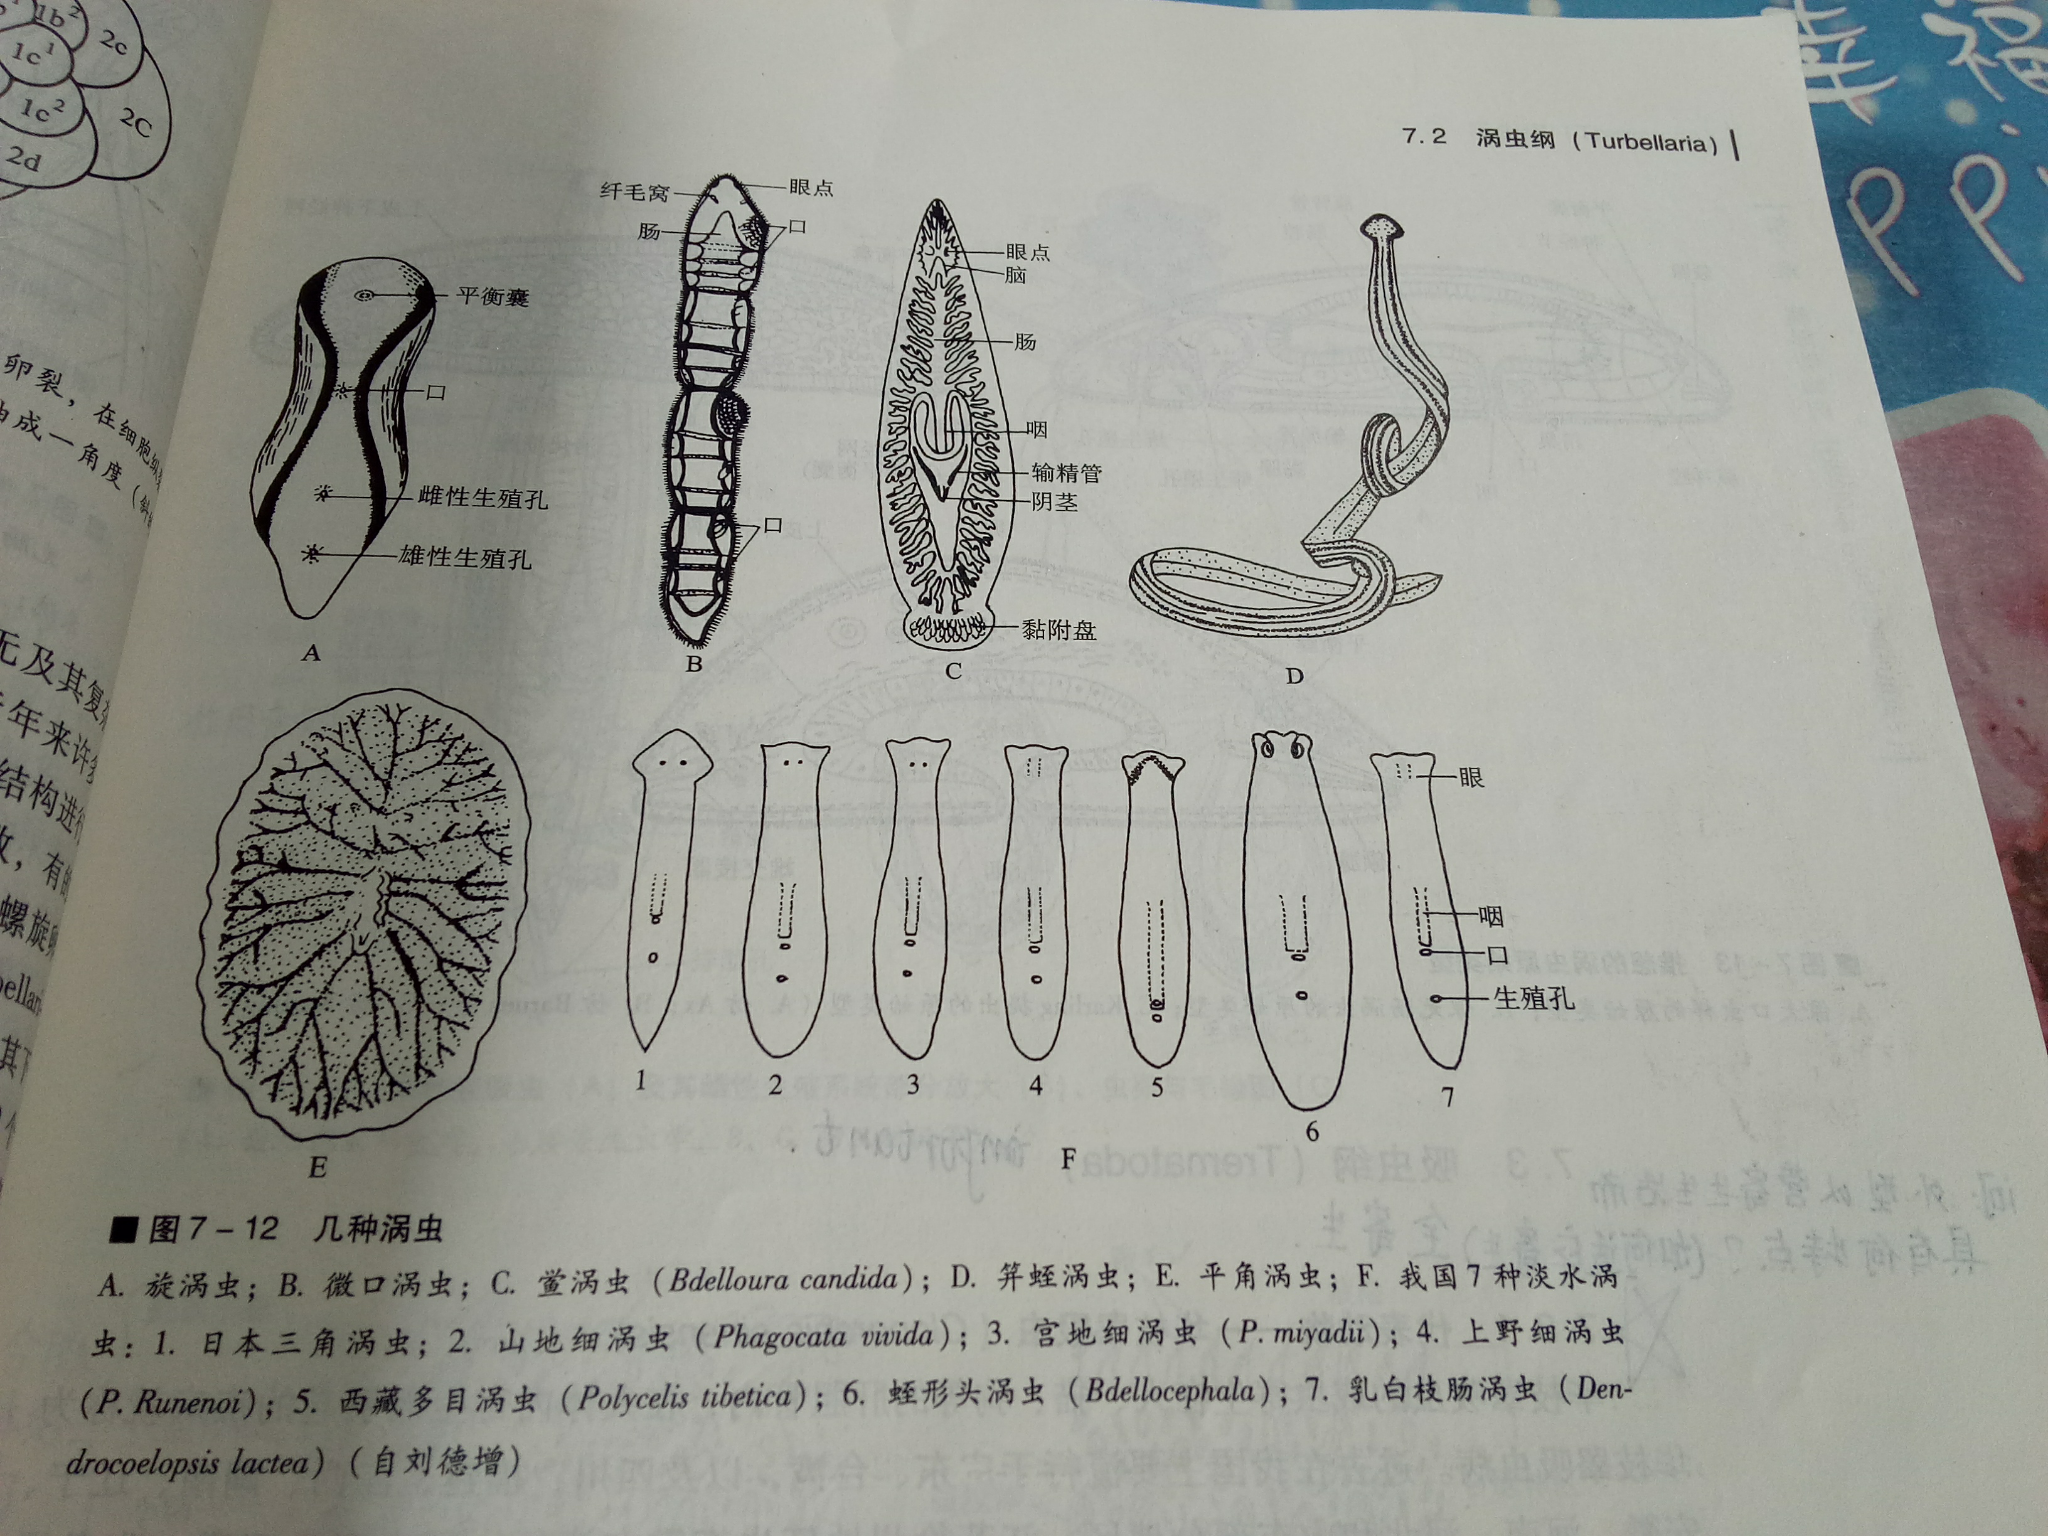 涡虫纵切面结构示意图图片